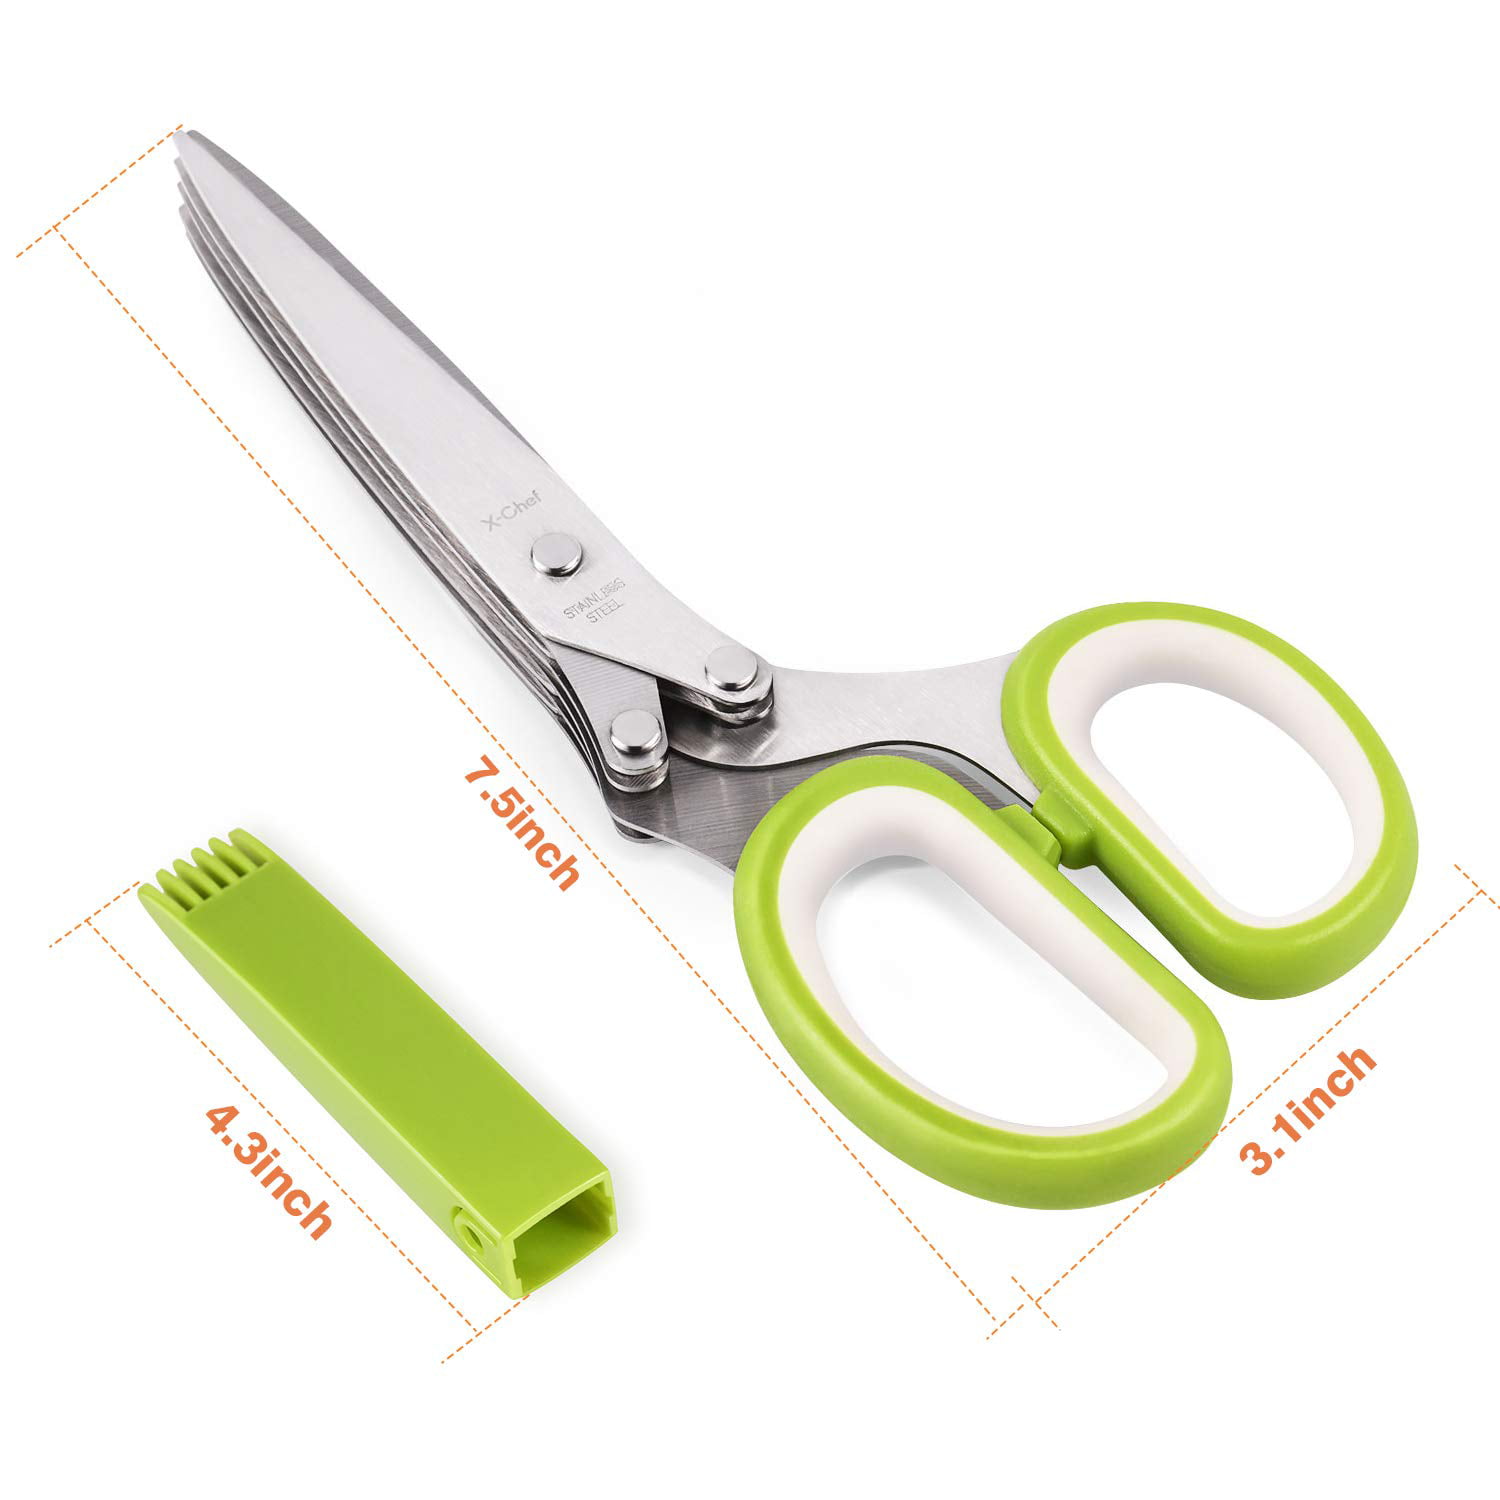 Sebider® GJ103 Kitchen Shears Herb Scissors Vegetable Peeler Set